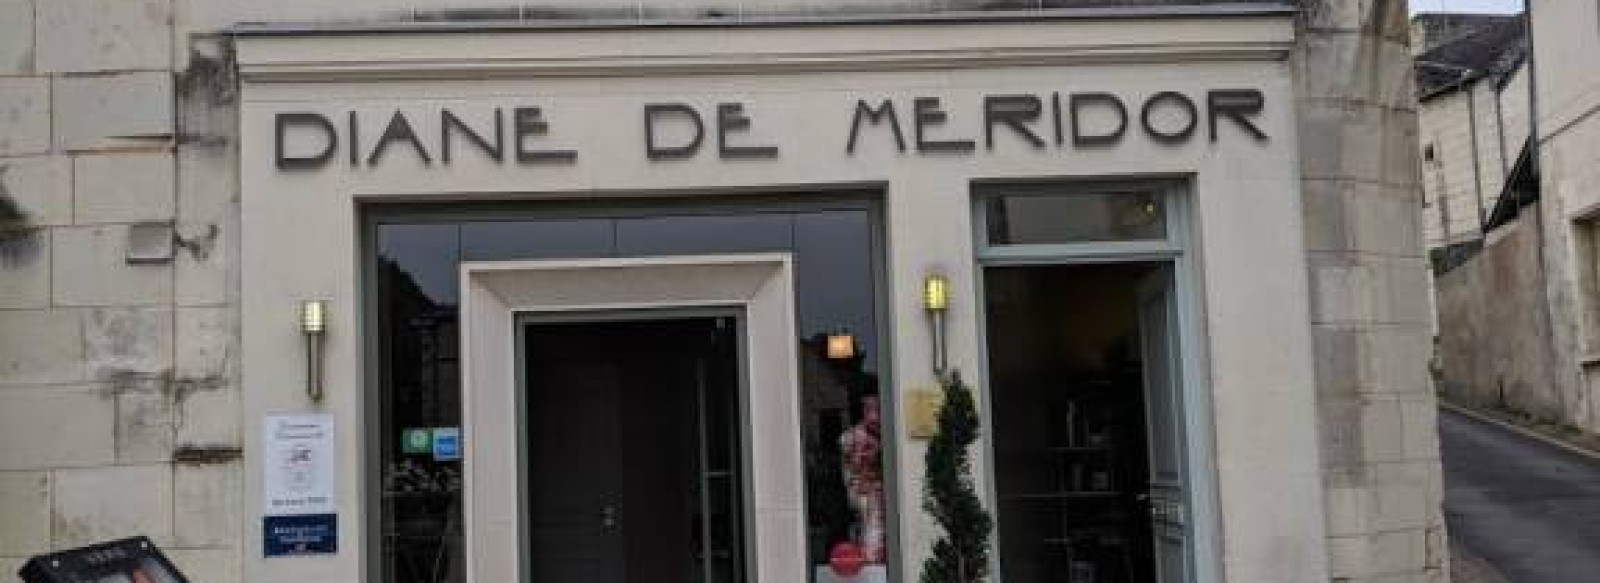 Restaurant Diane de Meridor